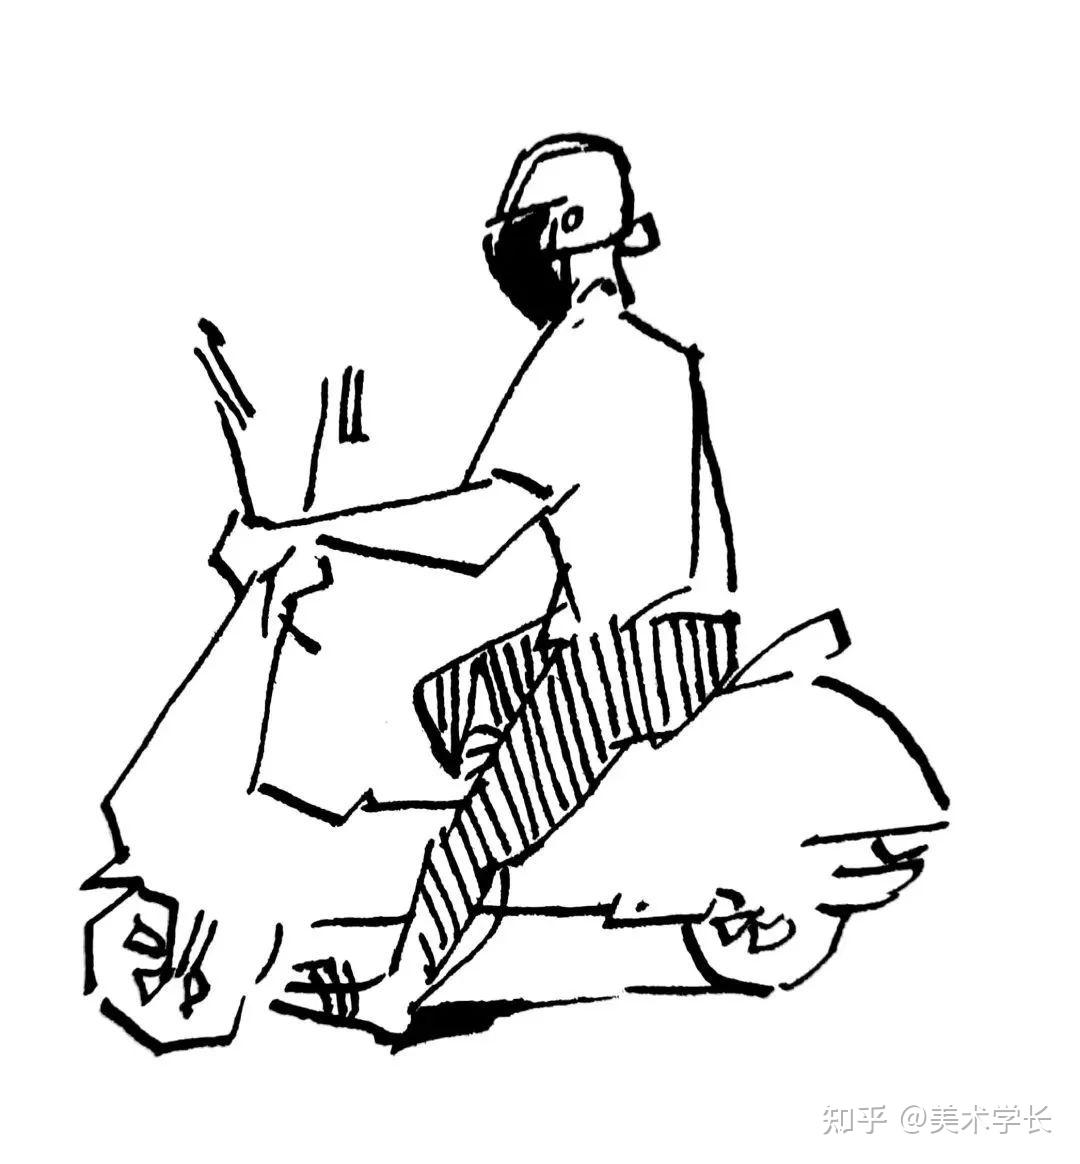 一个人骑摩托车简笔画图片